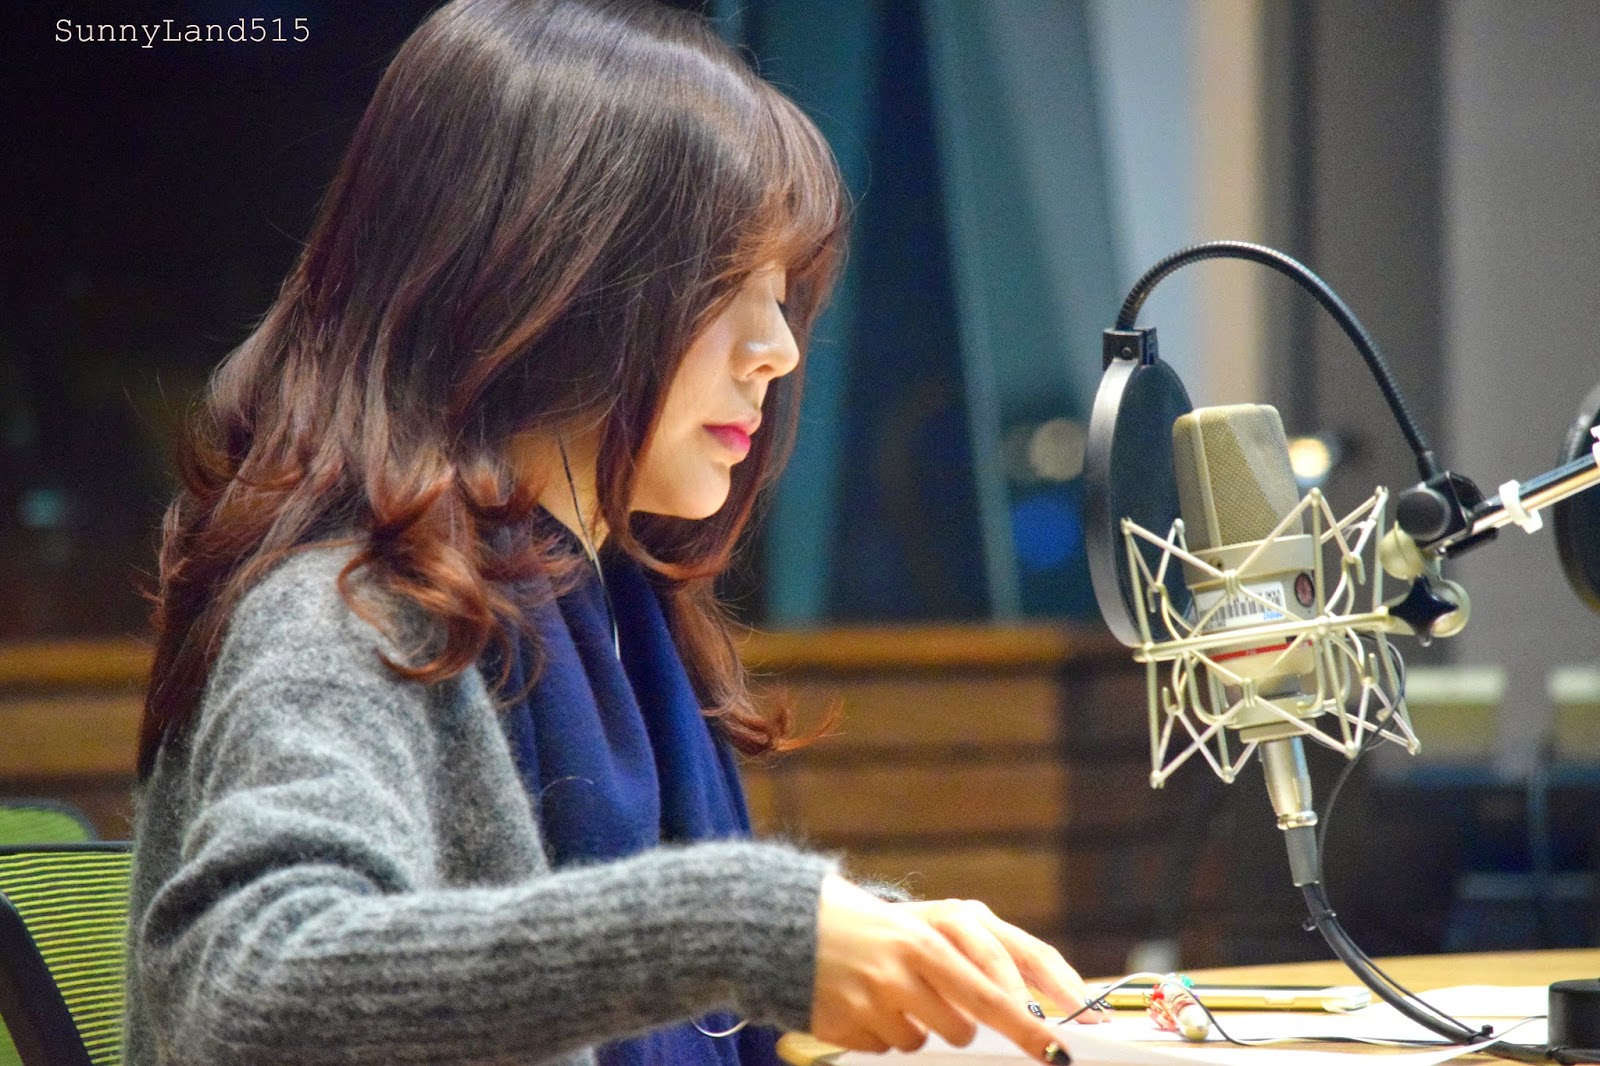 [OTHER][06-02-2015]Hình ảnh mới nhất từ DJ Sunny tại Radio MBC FM4U - "FM Date" - Page 10 DSC_0099_Fotor